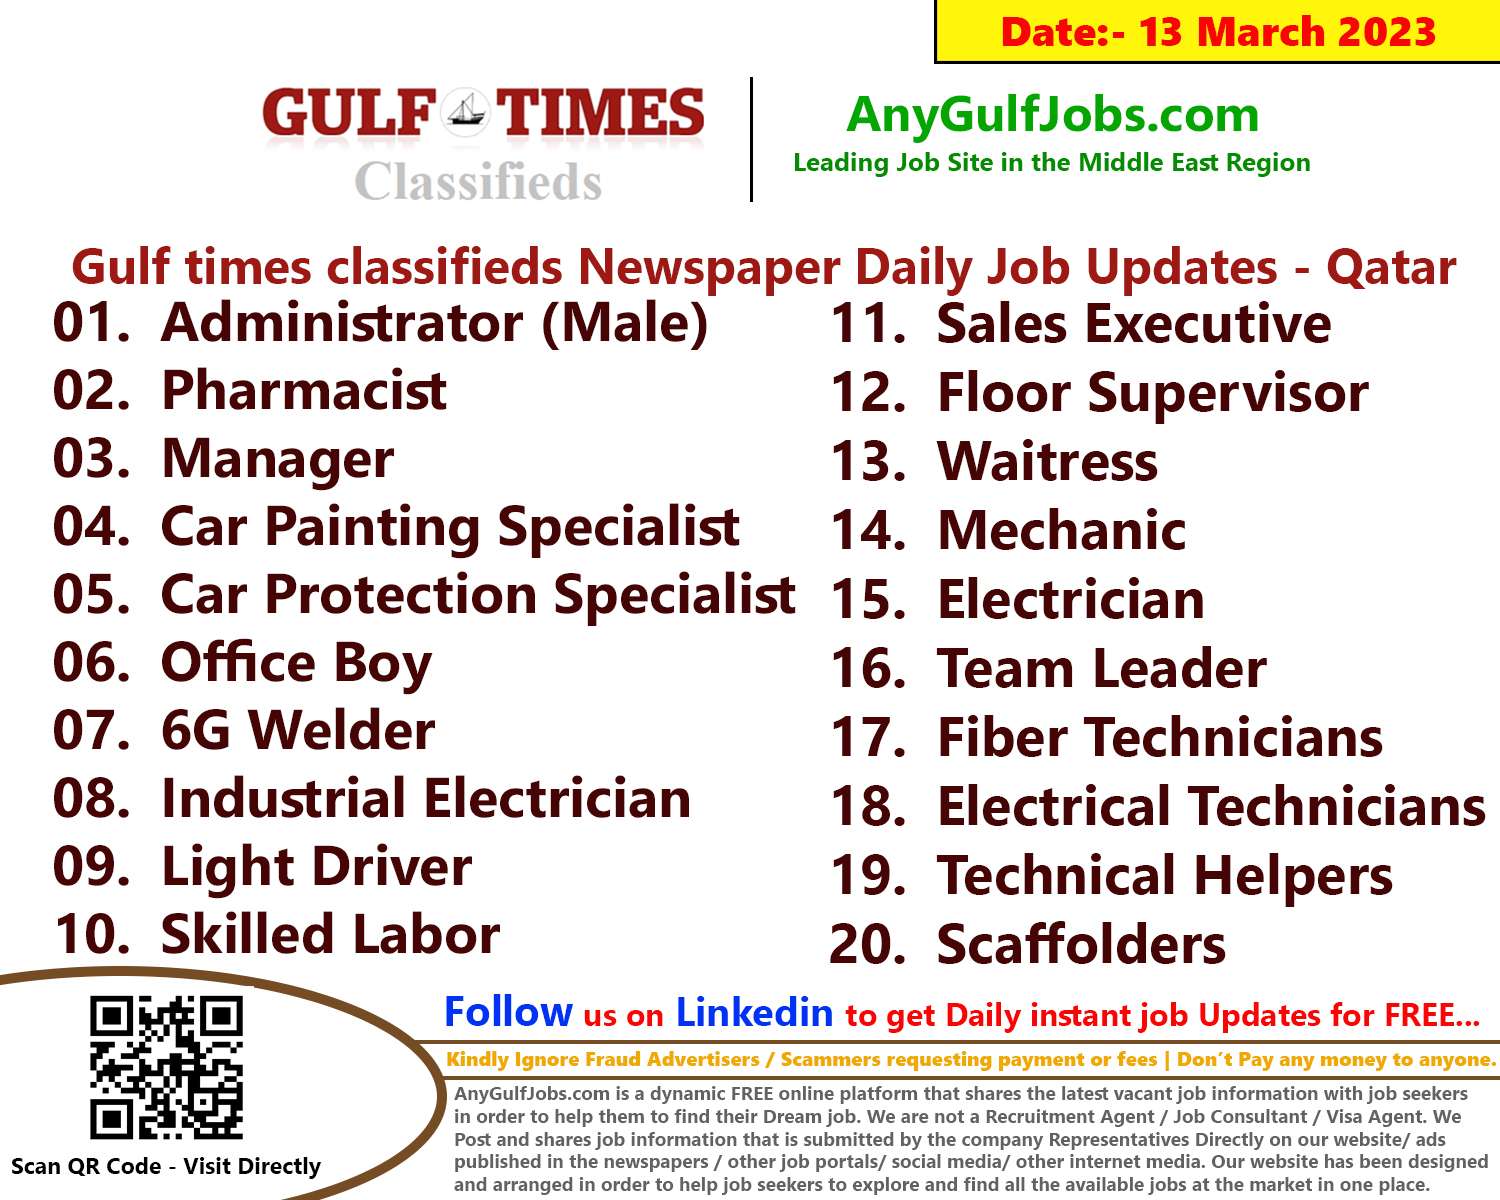 Gulf times classifieds Job Vacancies Qatar - 13 March 2023